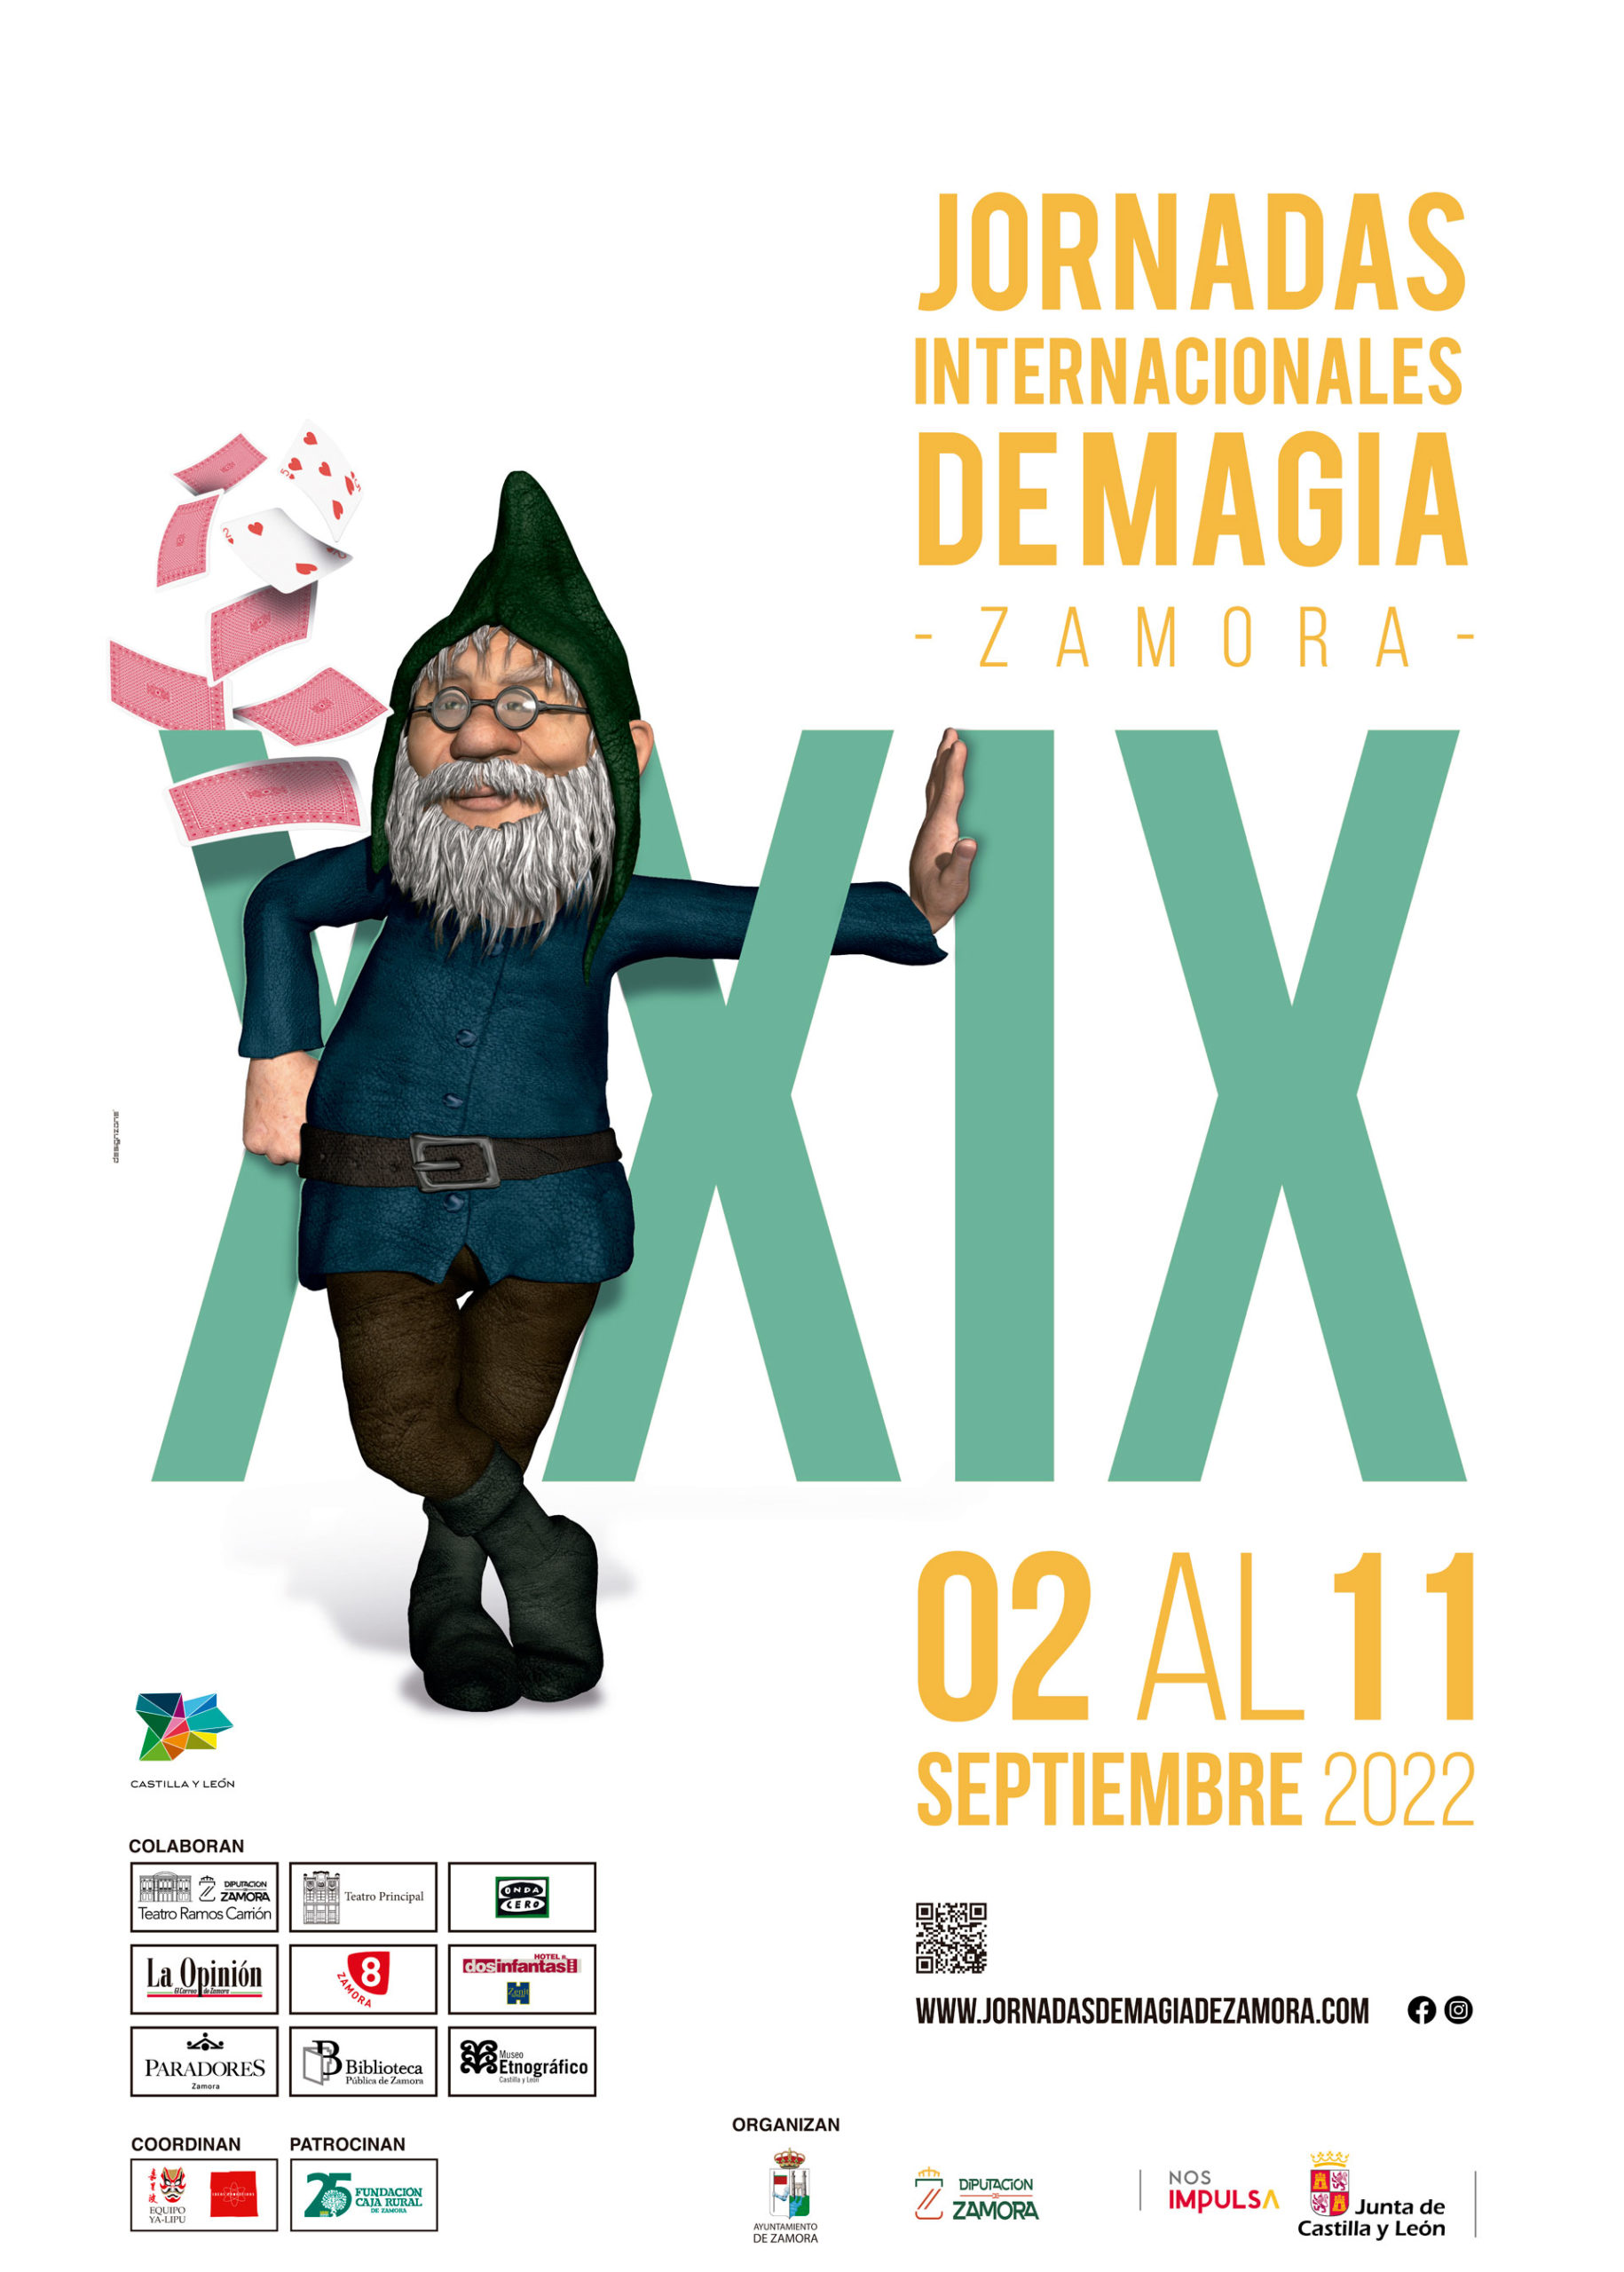 XXIX JORNADAS DE MAGIA ZAMORA. AGENDA CULTURAL DE ZAMORA. ZINQ